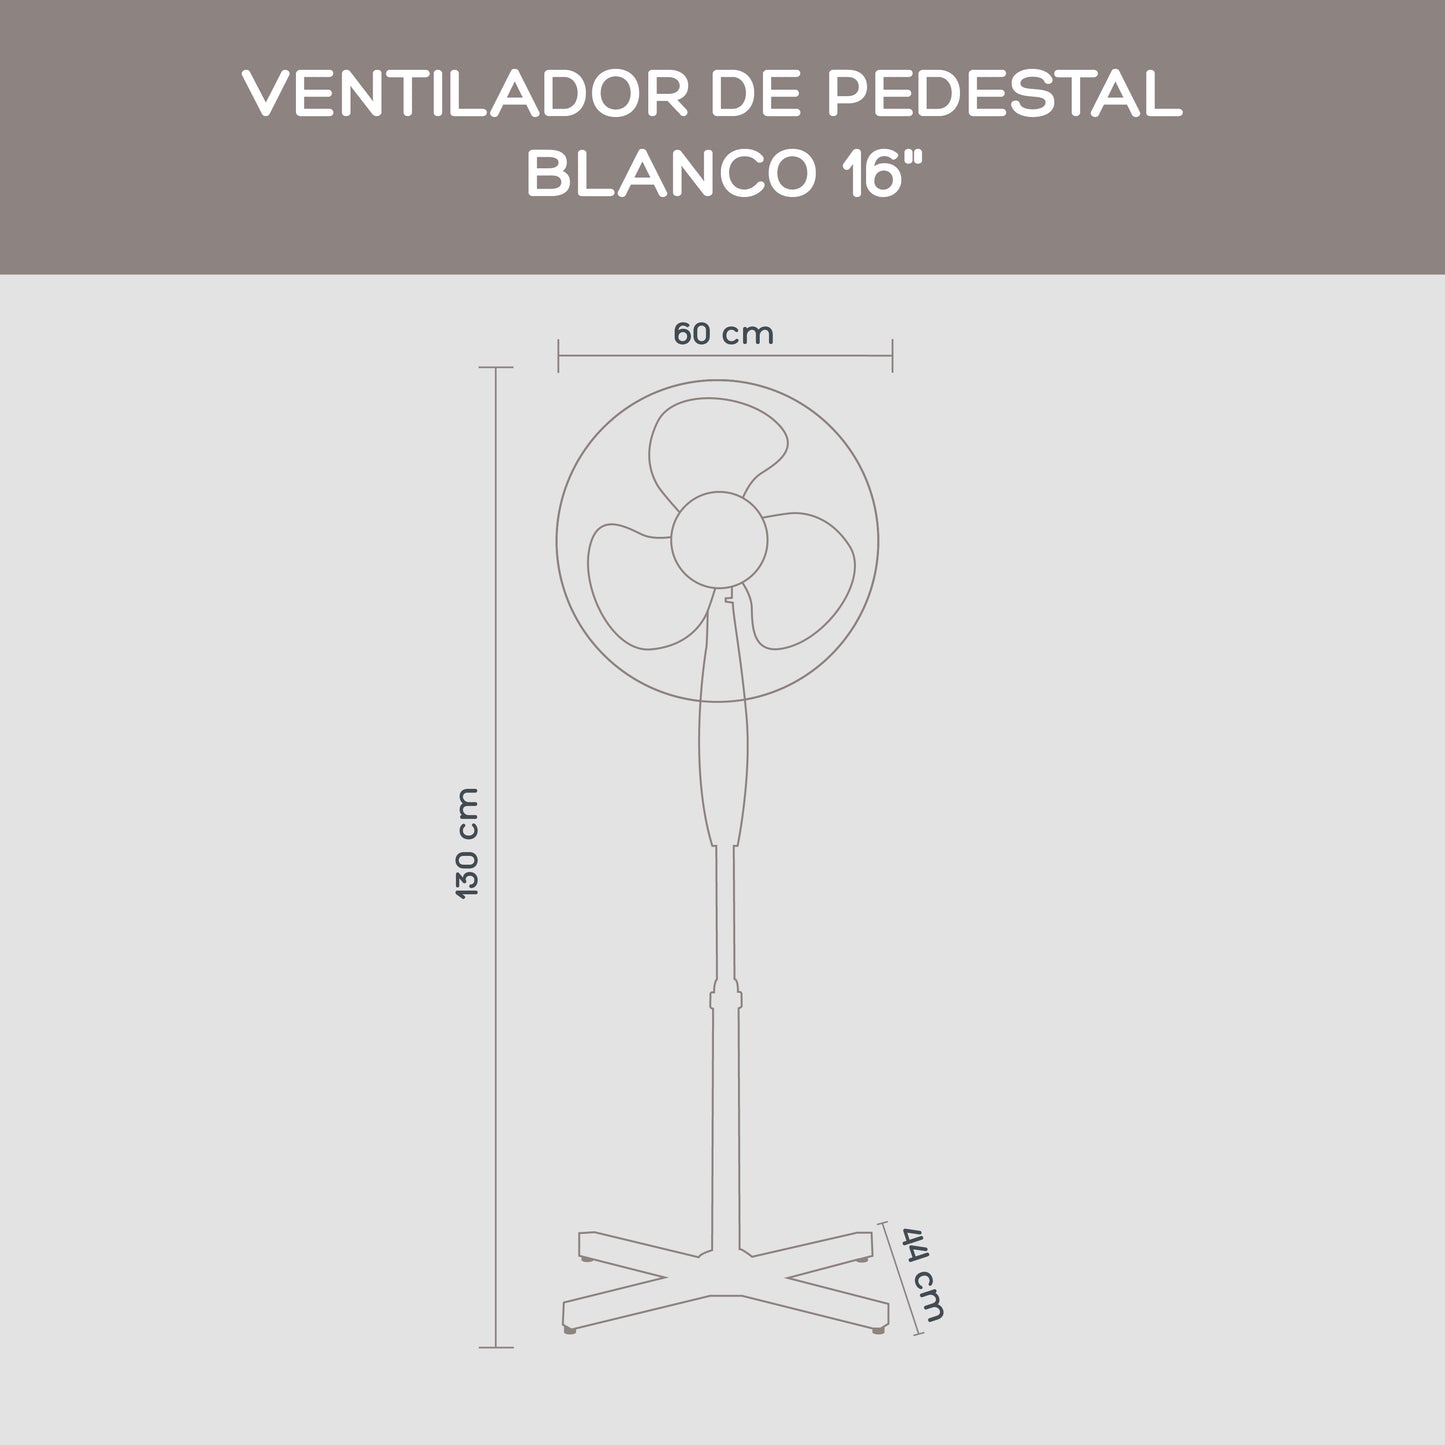 Ventilador de Pedestal Blanco 16"